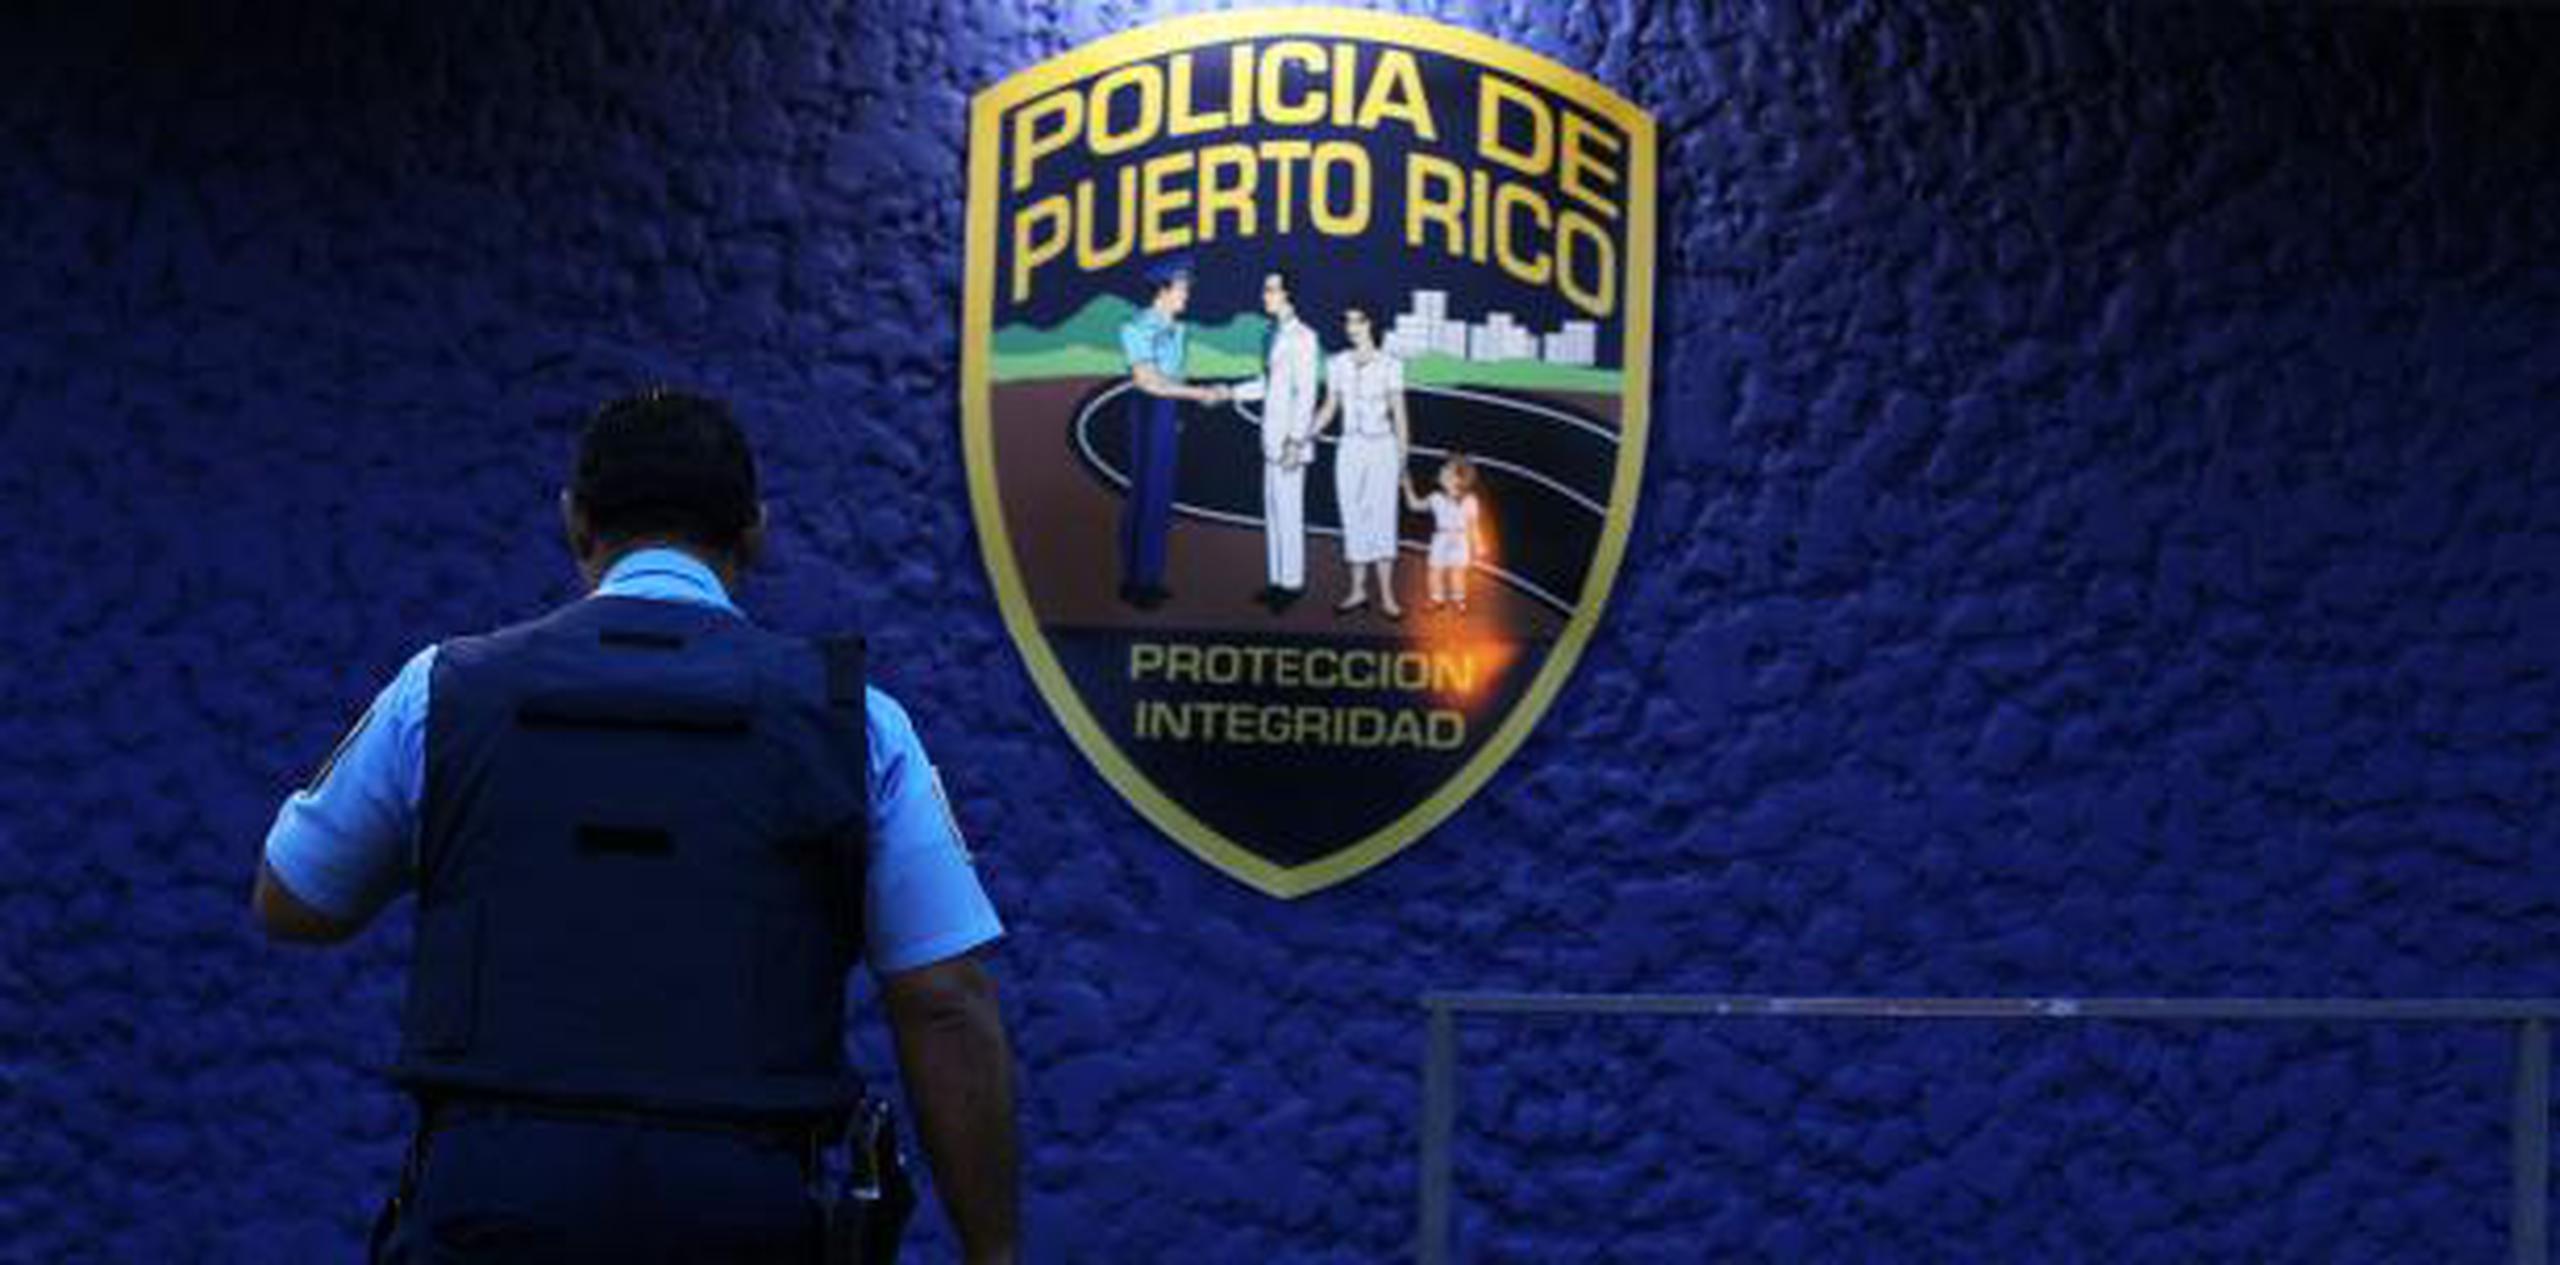 Tras el altercado, el policía Luis Reyes Lebrón, quien lleva 7 años como miembro activo de la Uniformada, fue arrestado. (Archivo)